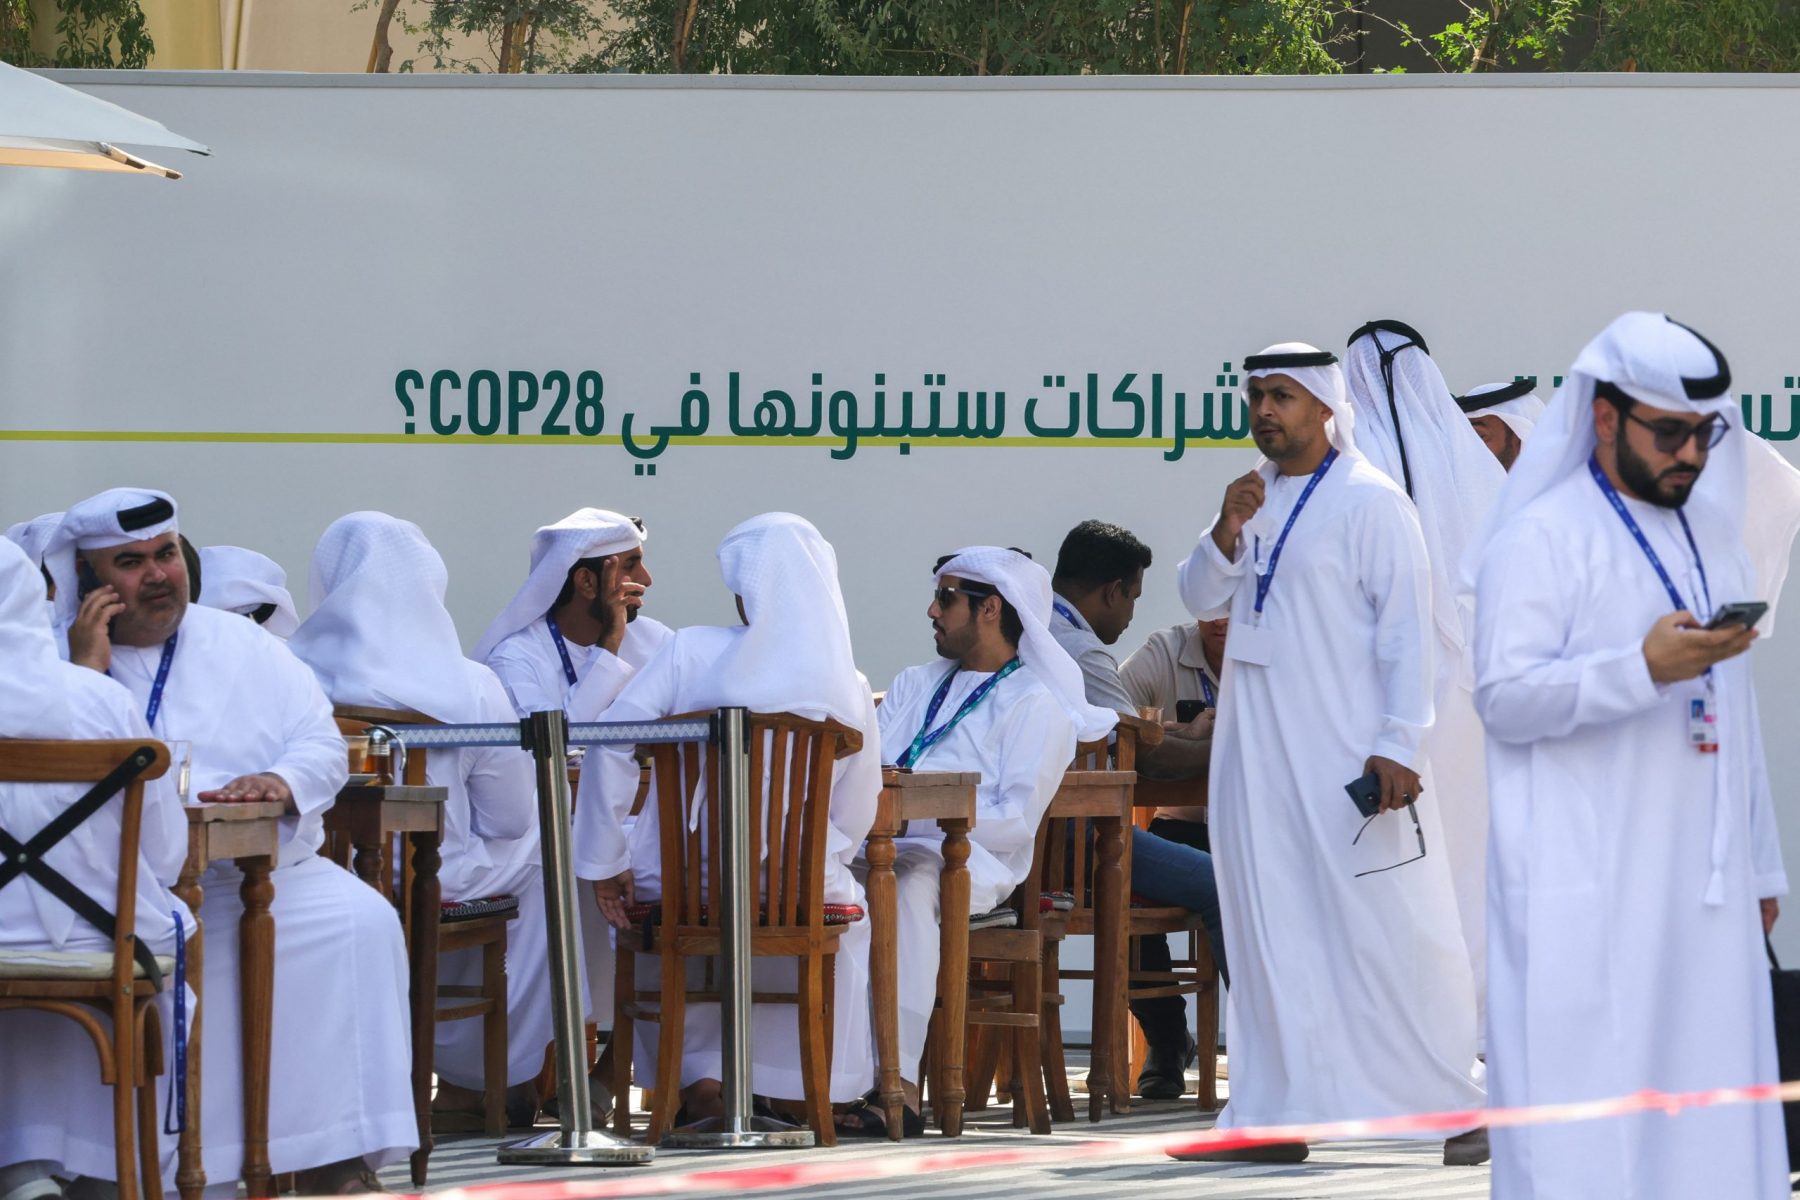 Participantes aguardam do lado de fora o início dos trabalhos da Conferência Climática., em Dubai. Principalmente novidade deste ano será a divulgação do balanço sobre a falta de progresso na redução das emissões de gases de efeito de estufa. Foto Giuseppe Cacace/AFP